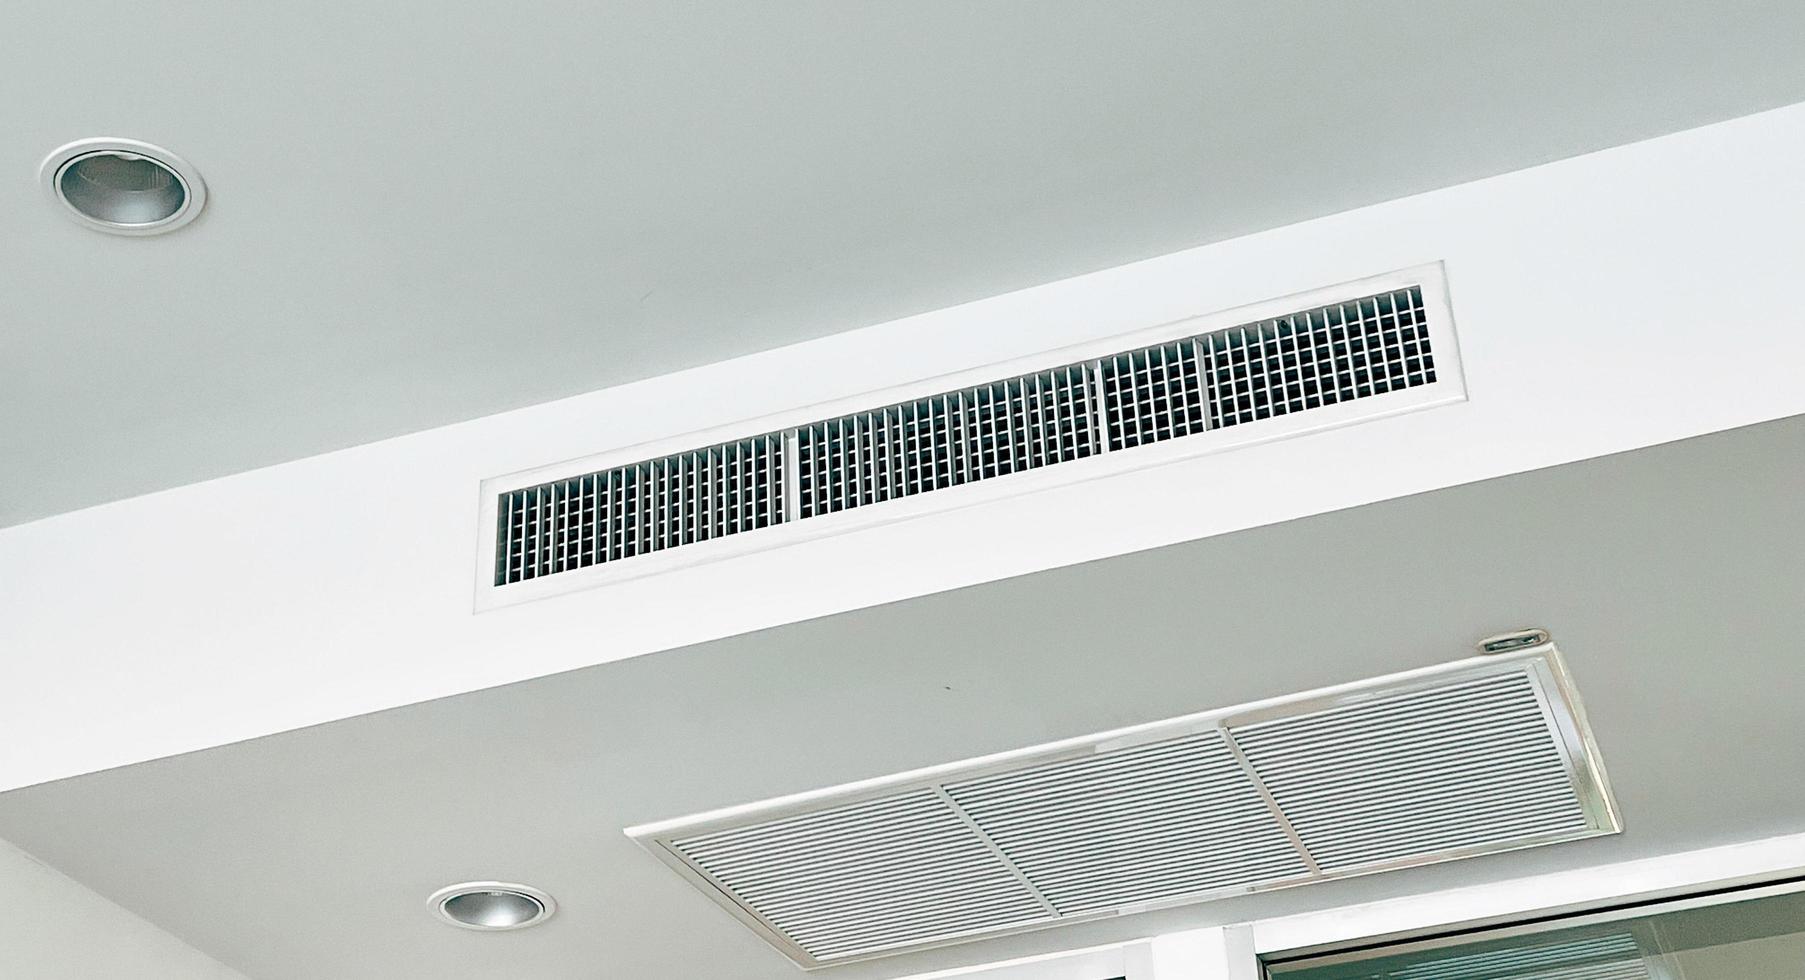 tak monterad kassett typ luft balsam och modern lampa ljus på vit tak. kanal luft balsam för Hem, hall eller kontor. foto